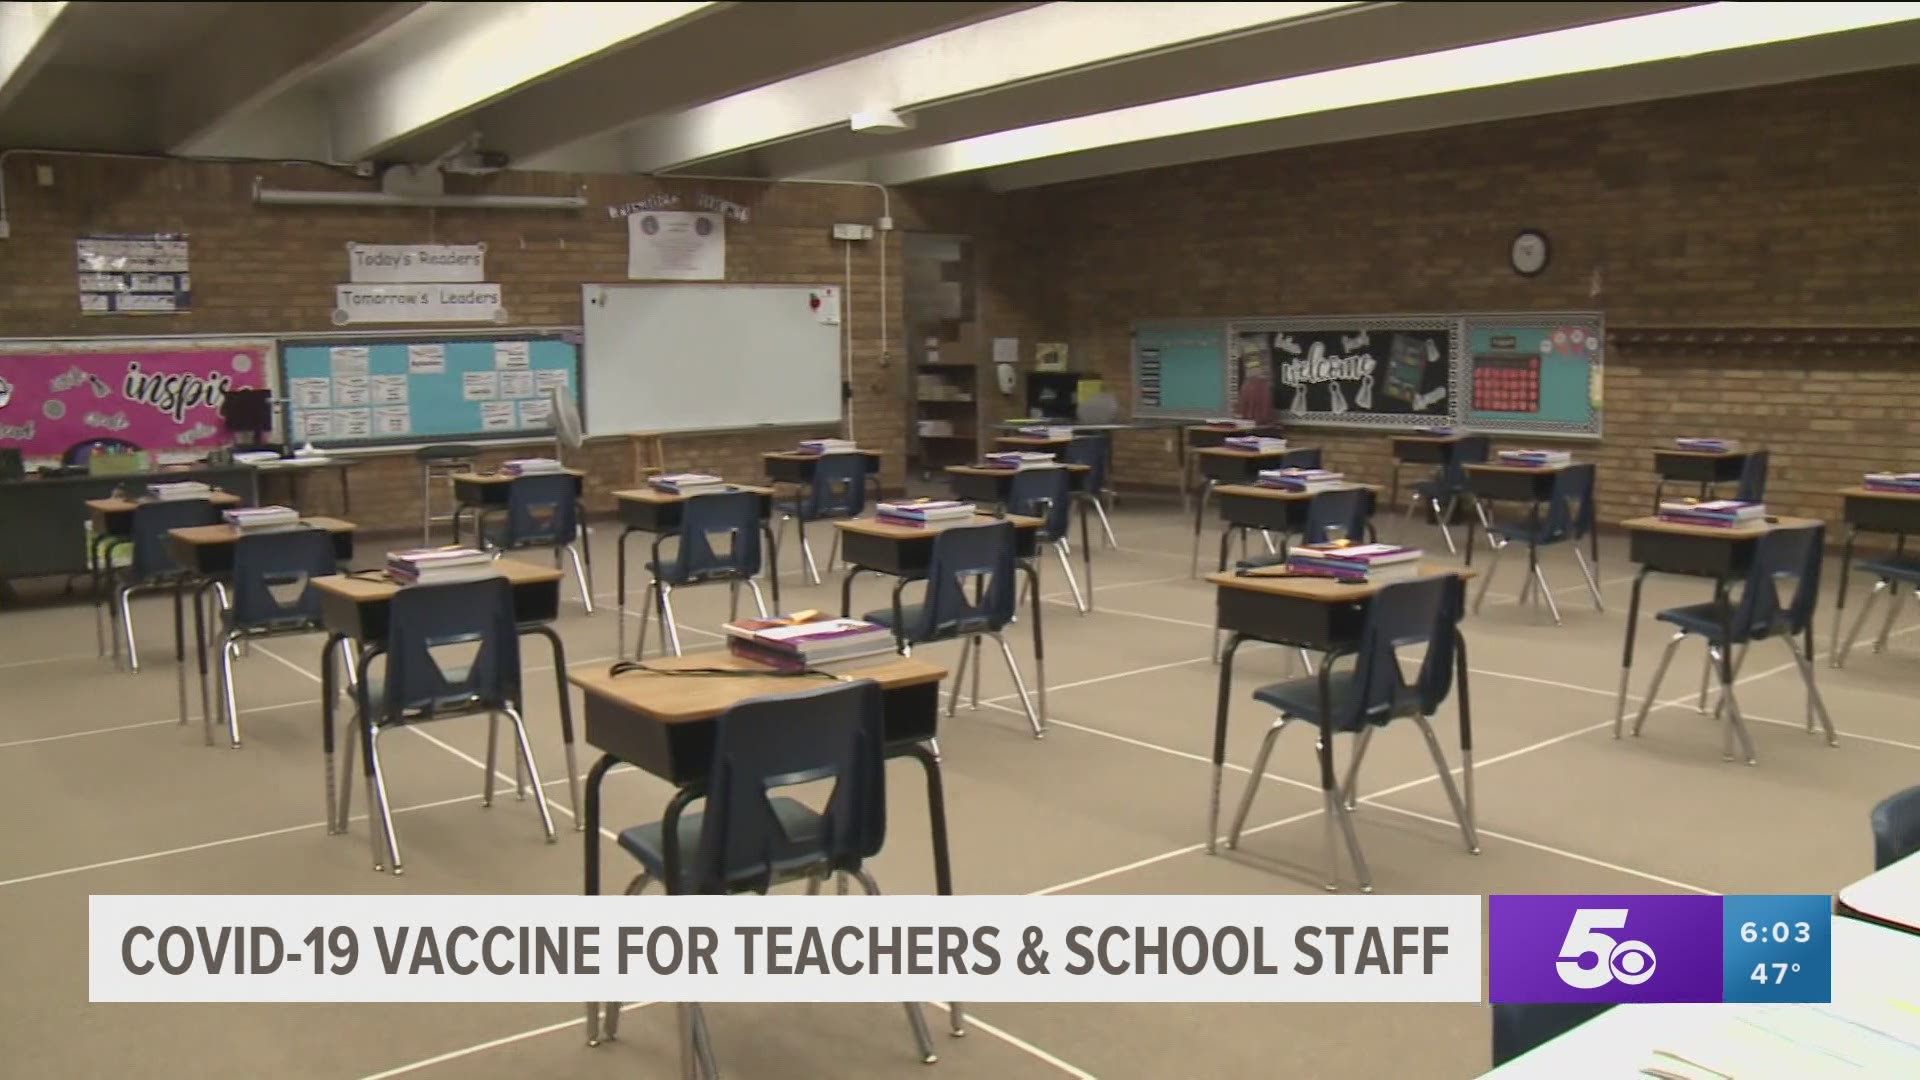 Local teachers and school staff prepare to receive COVID-19 vaccine